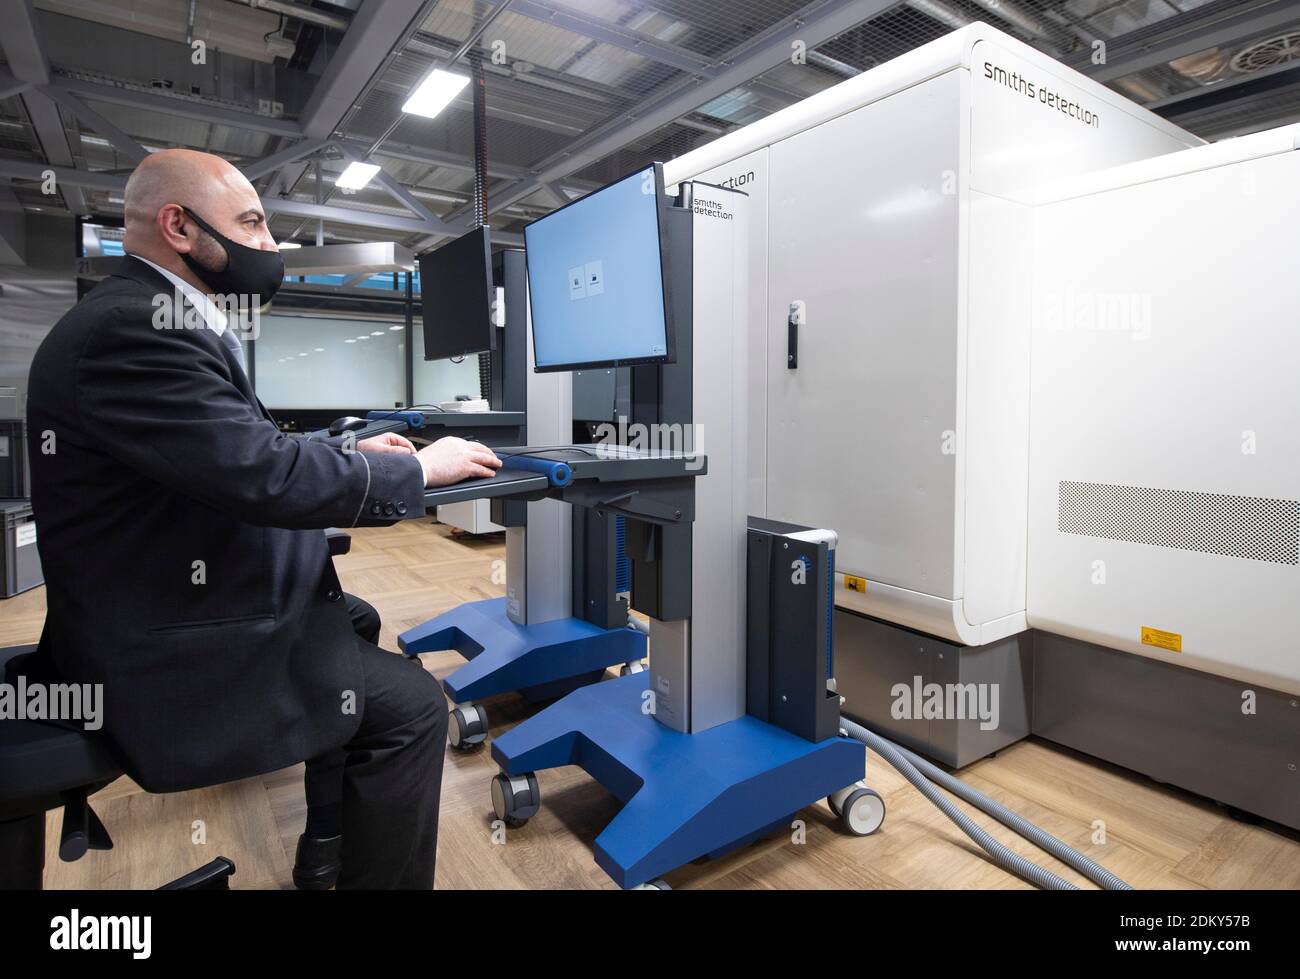 14 dicembre 2020, Hessen, Francoforte sul meno: Un addetto alla sicurezza  simula la funzione di uno scanner TC per bagagli nella gestione dei  passeggeri all'aeroporto di Francoforte. Si suppone che i dispositivi